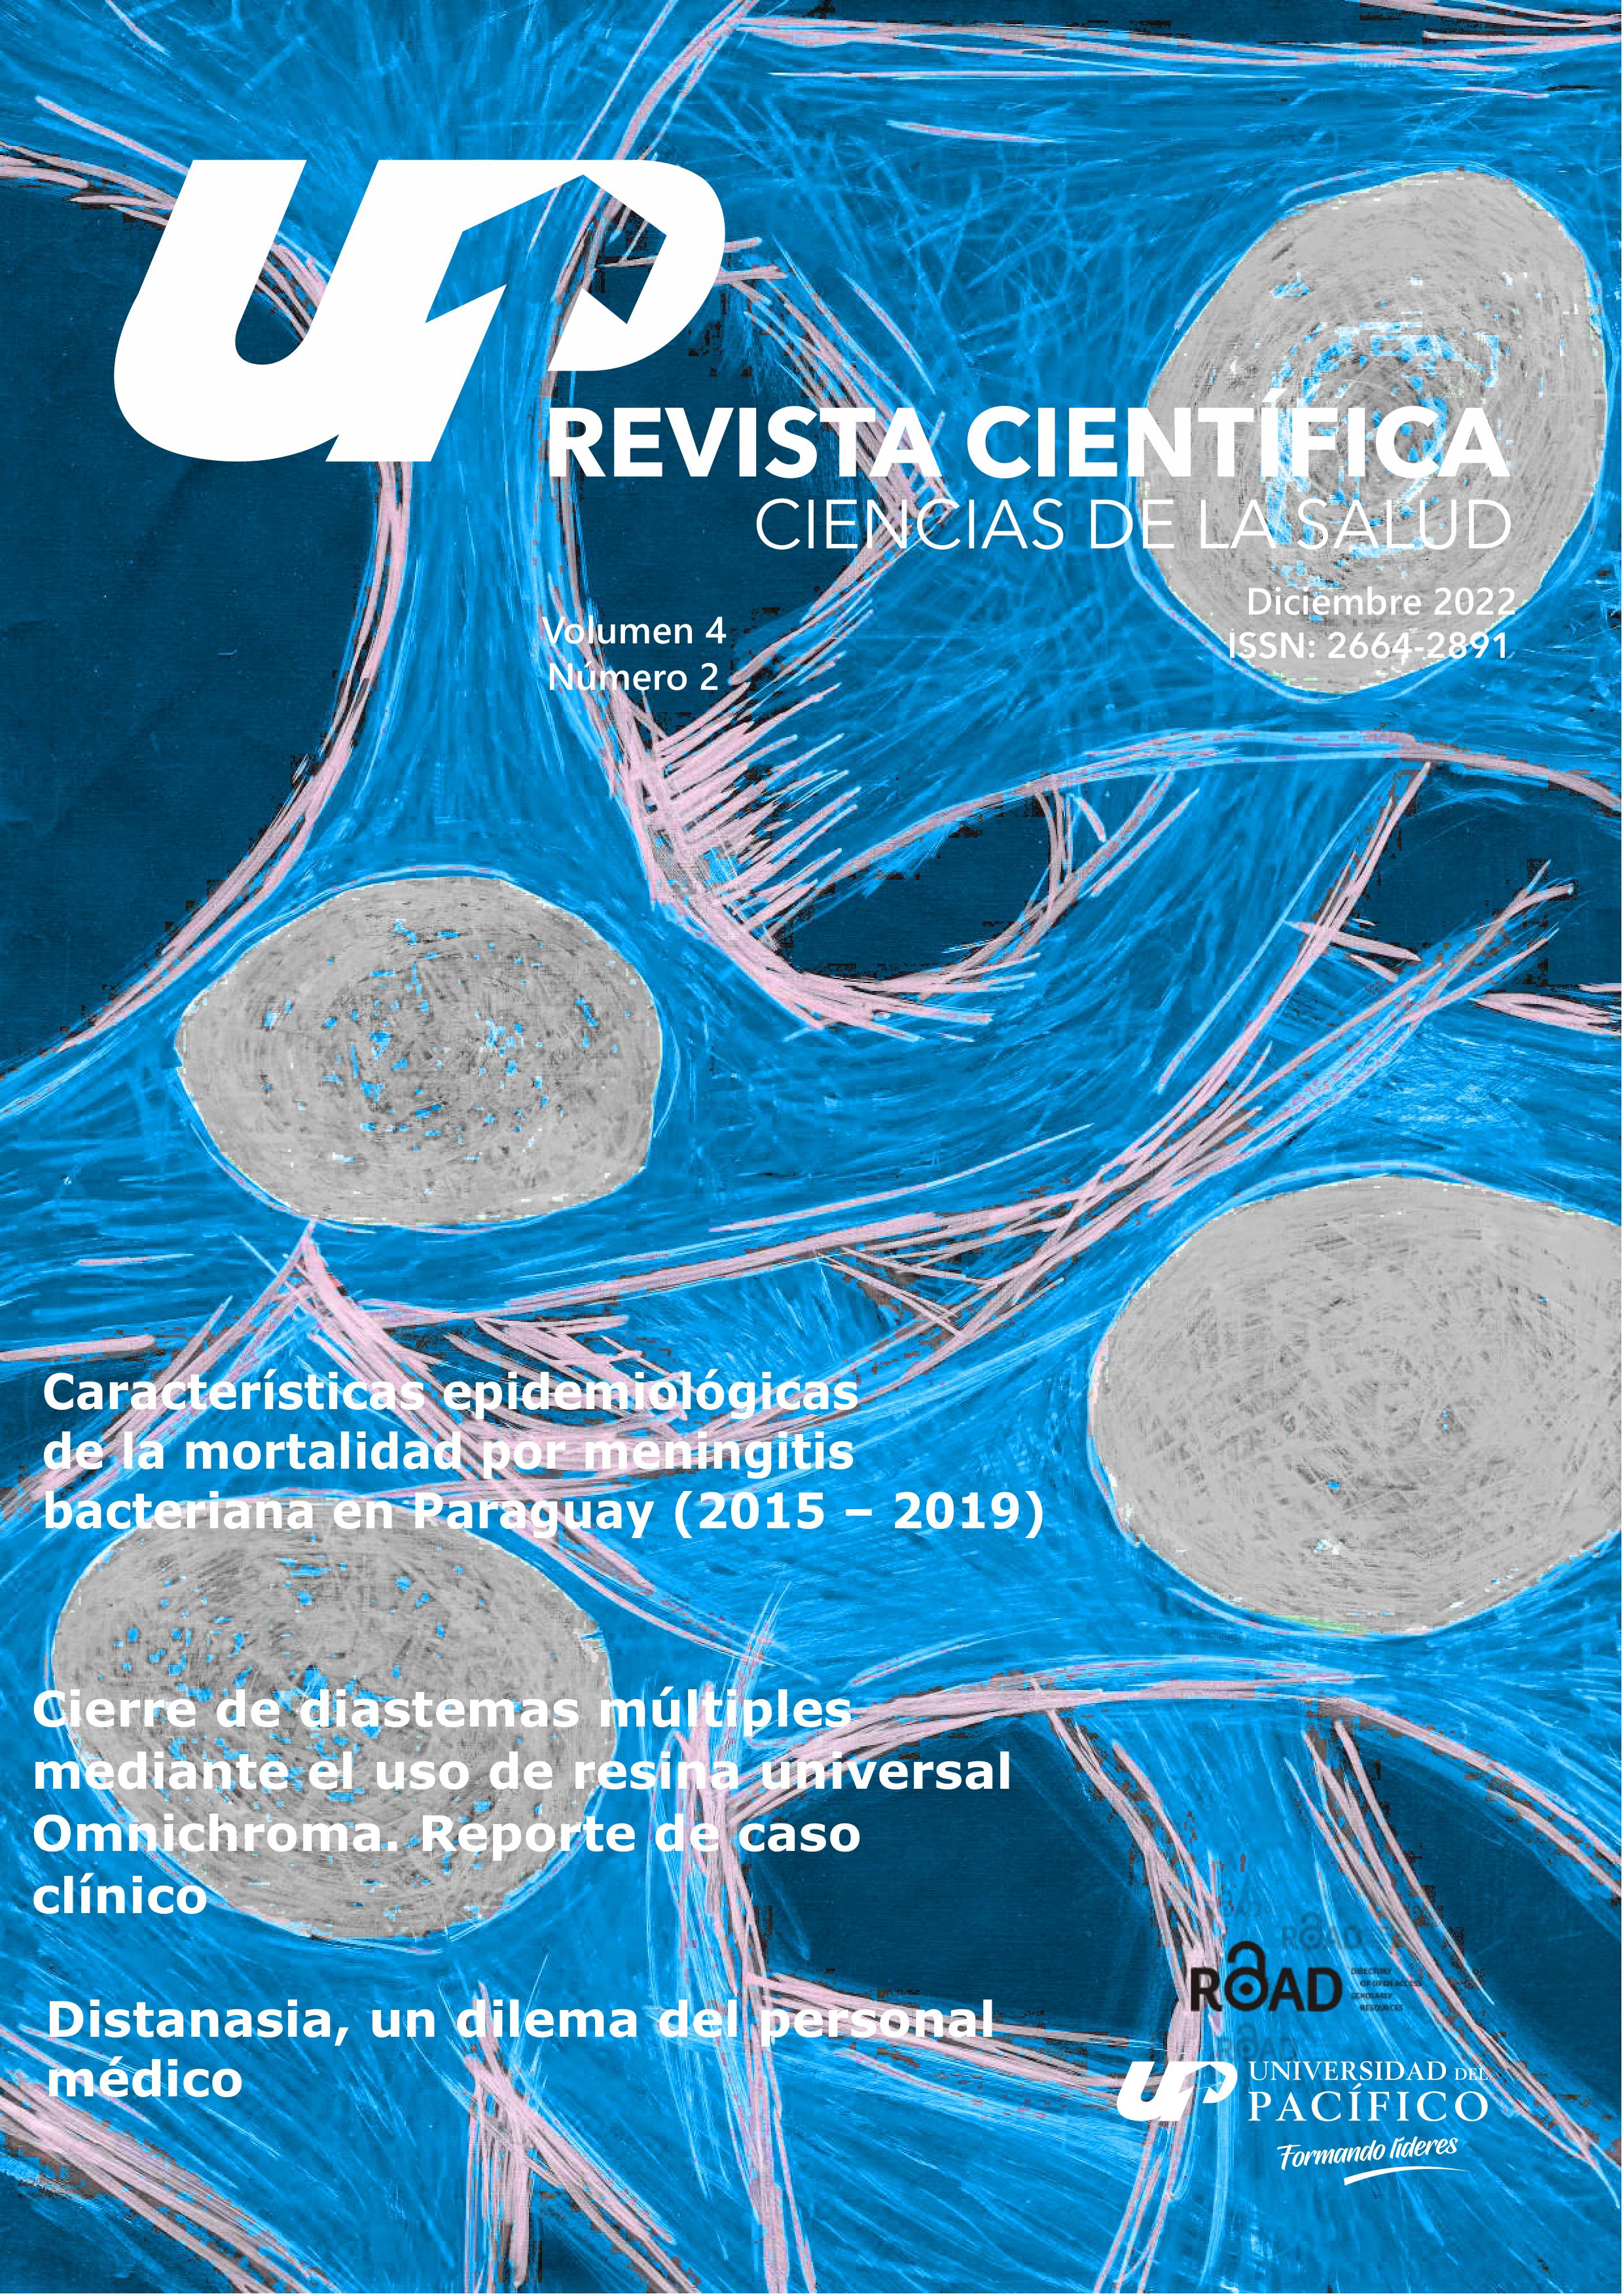 					View Vol. 4 No. 2 (2022): Revista científica ciencias de la salud - ISSN: 2664-2891
				